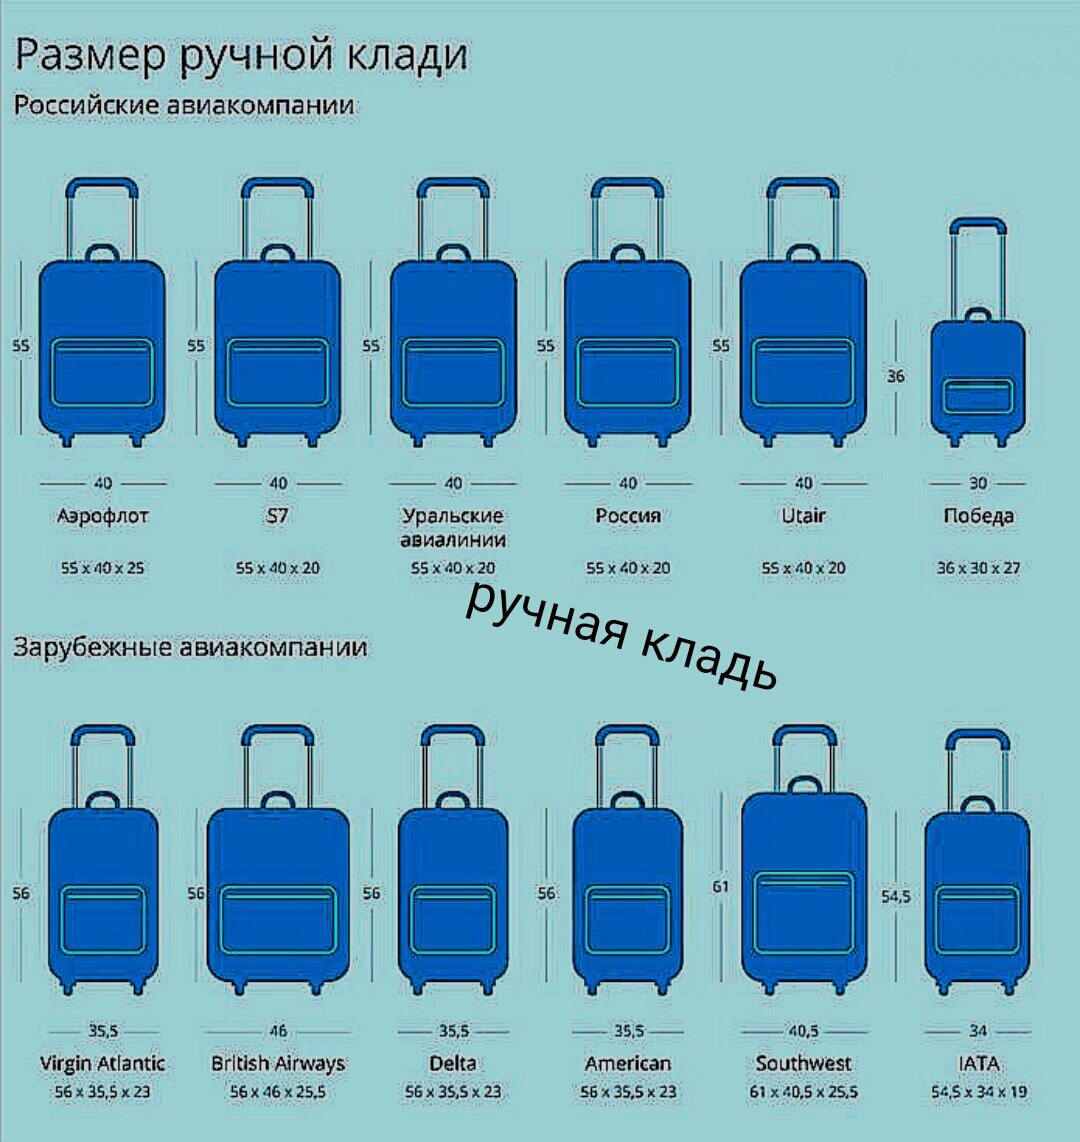 Нормы провоза багажа в самолете для авиакомпаний